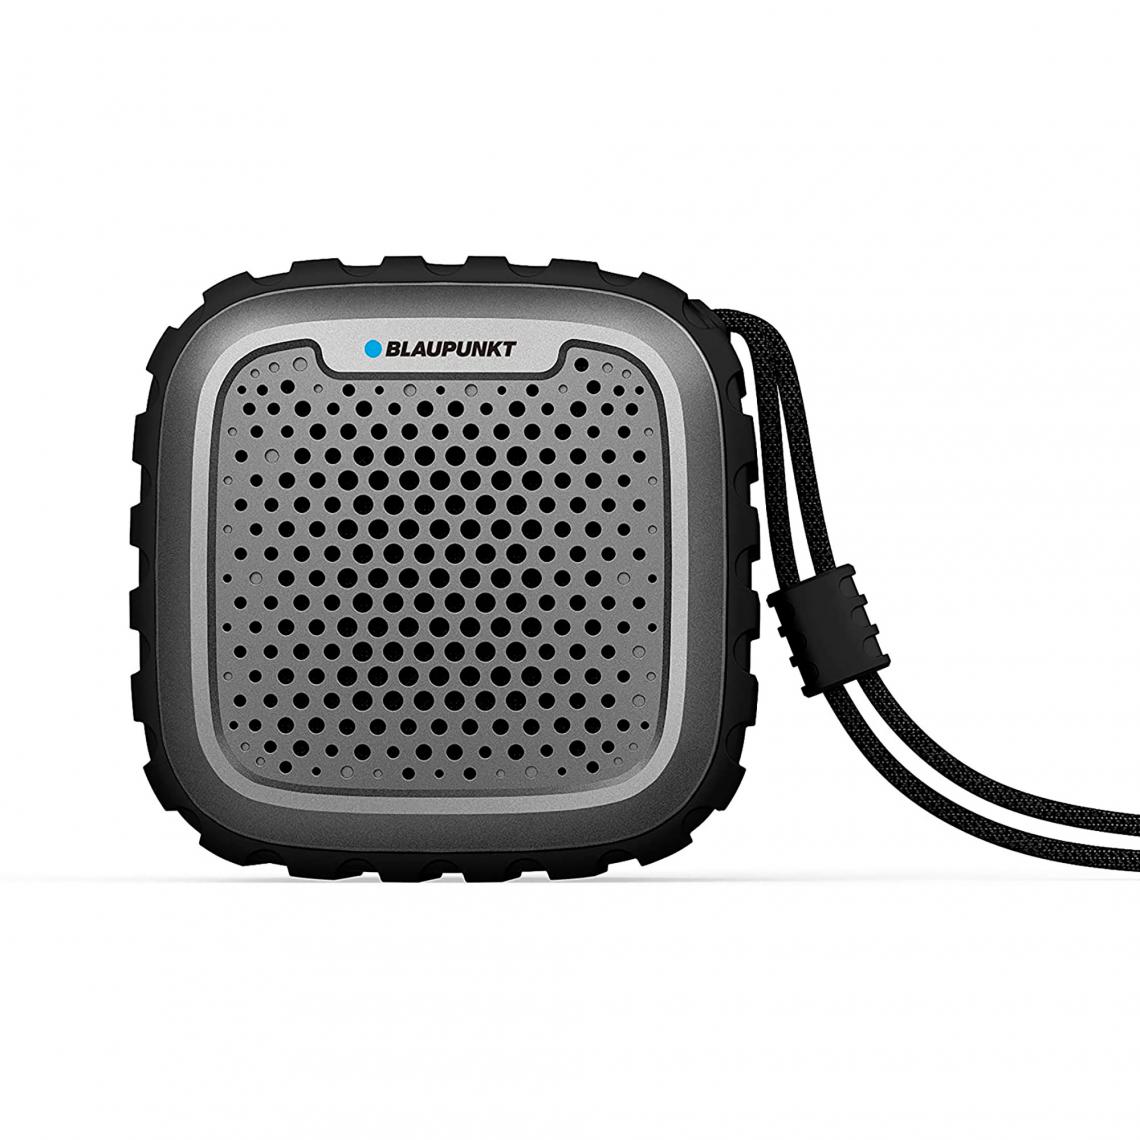 Blaupunkt - Haut-parleur Bluetooth, Portable, Puissance Sonore 10W, Étanche, Sans Fil Blaupunkt BLP6110 - Enceintes Hifi